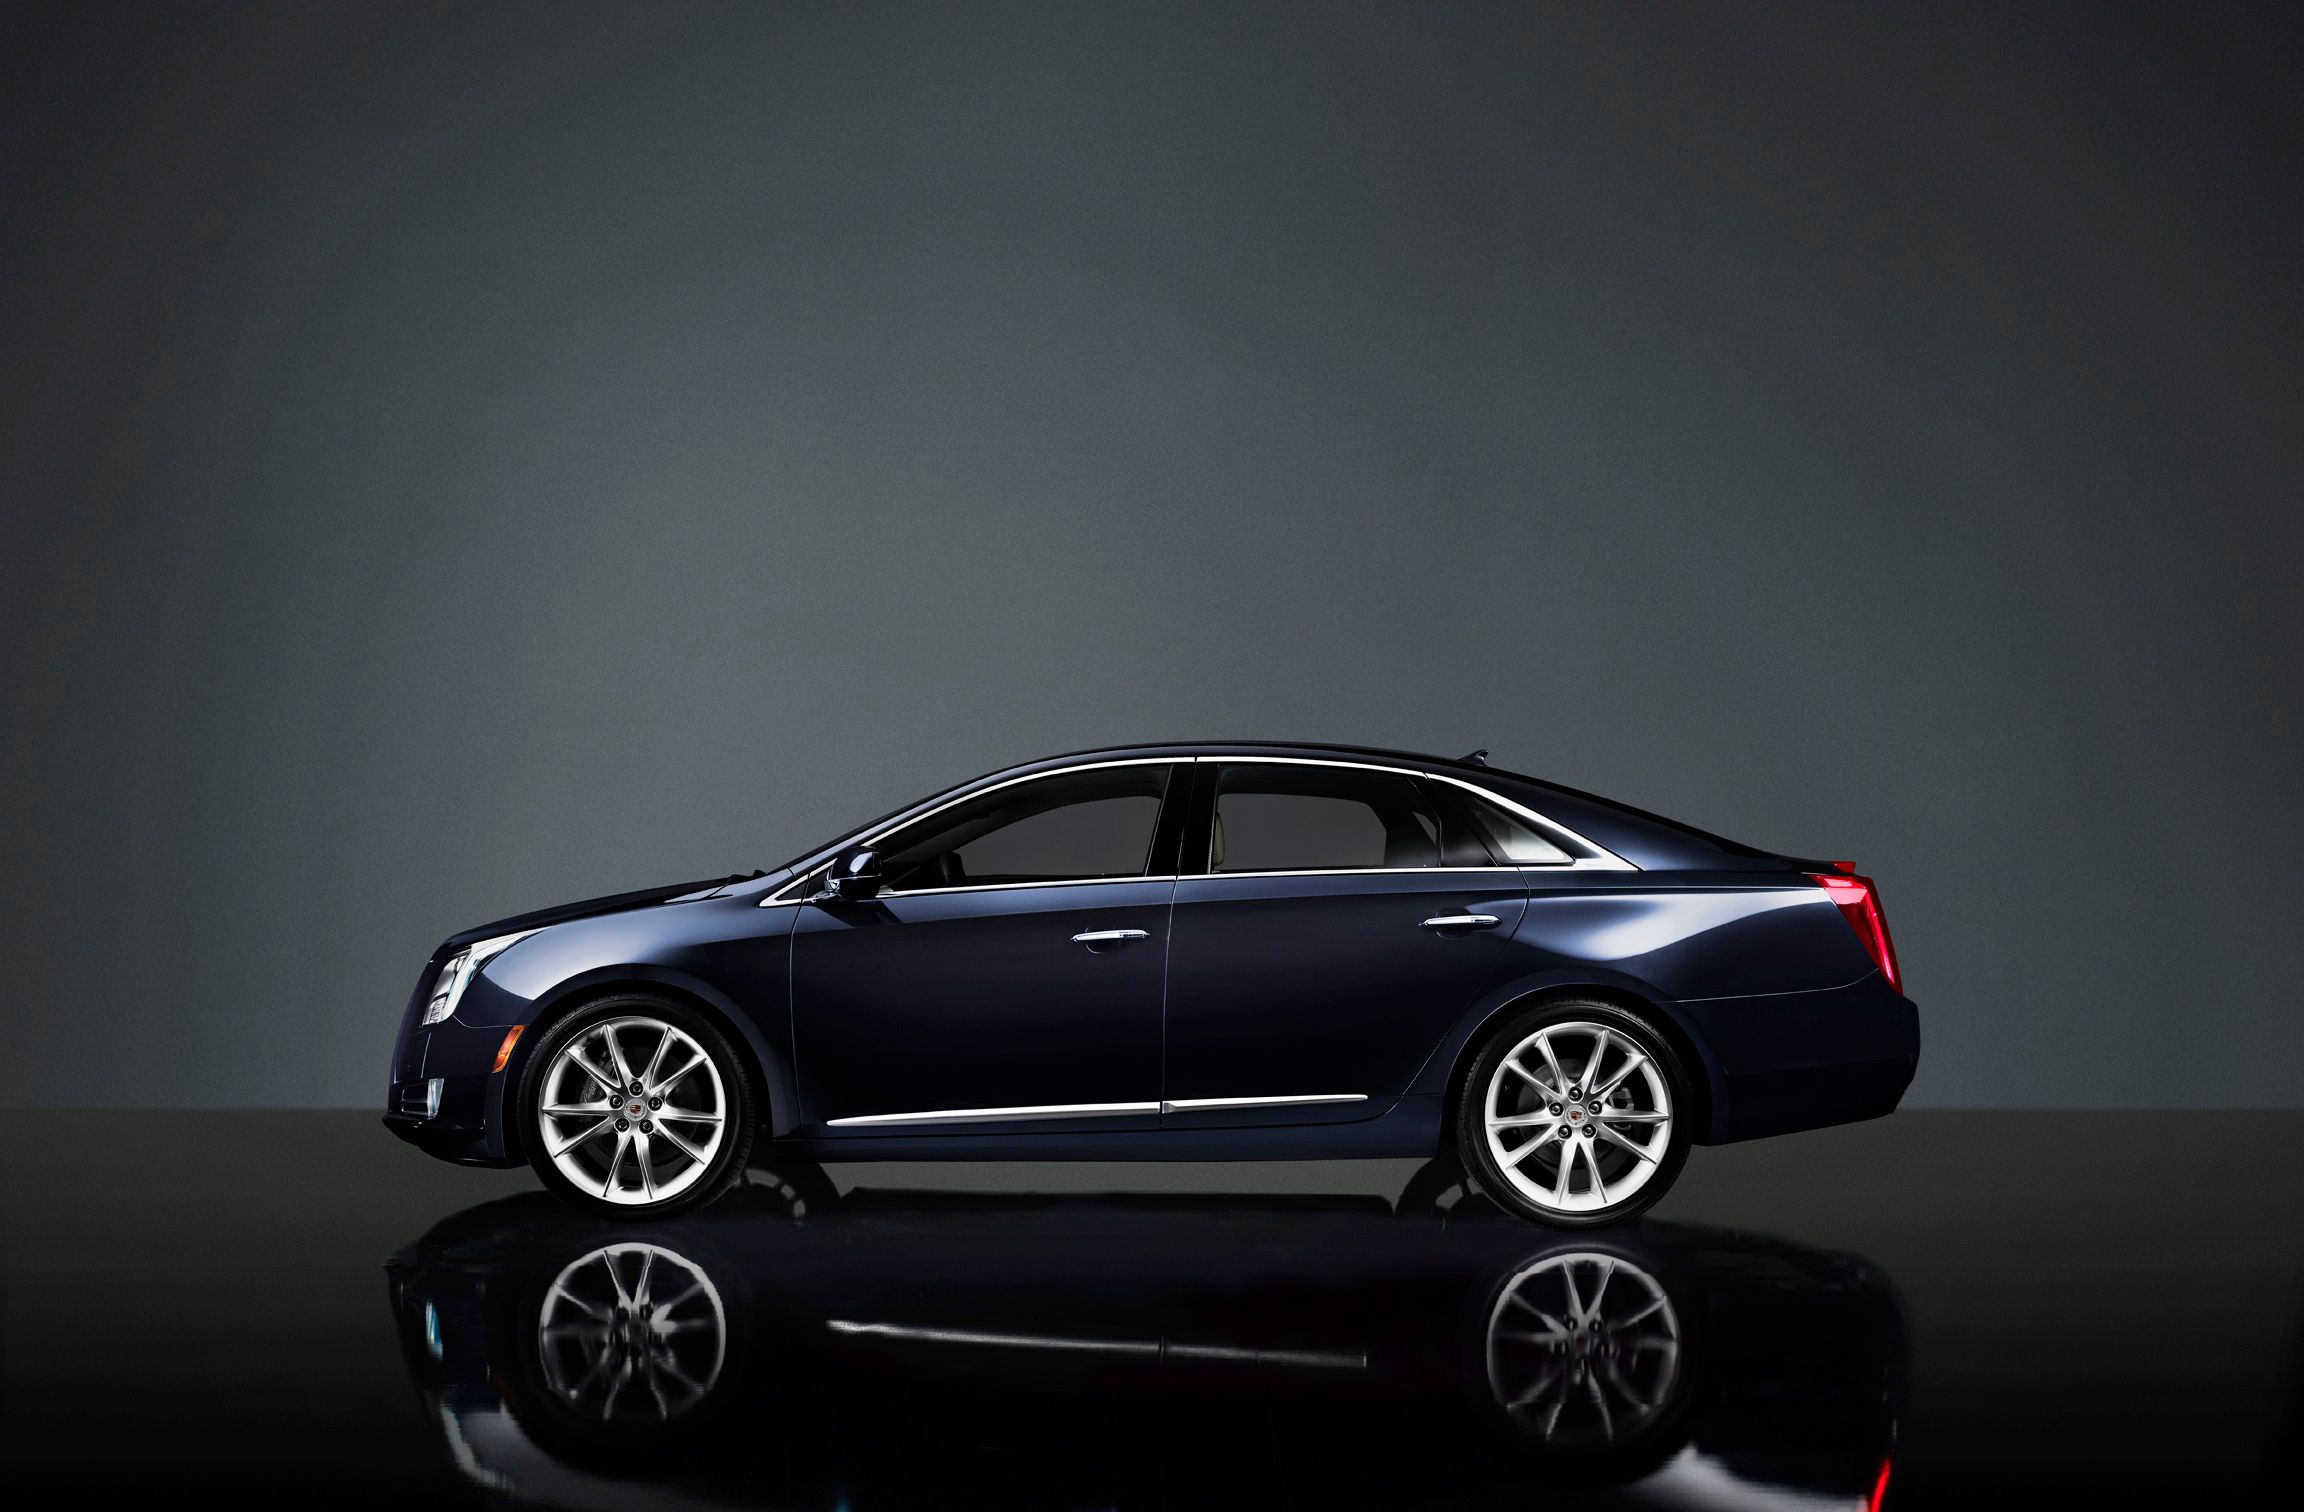 2014 - 2015 Cadillac XTS